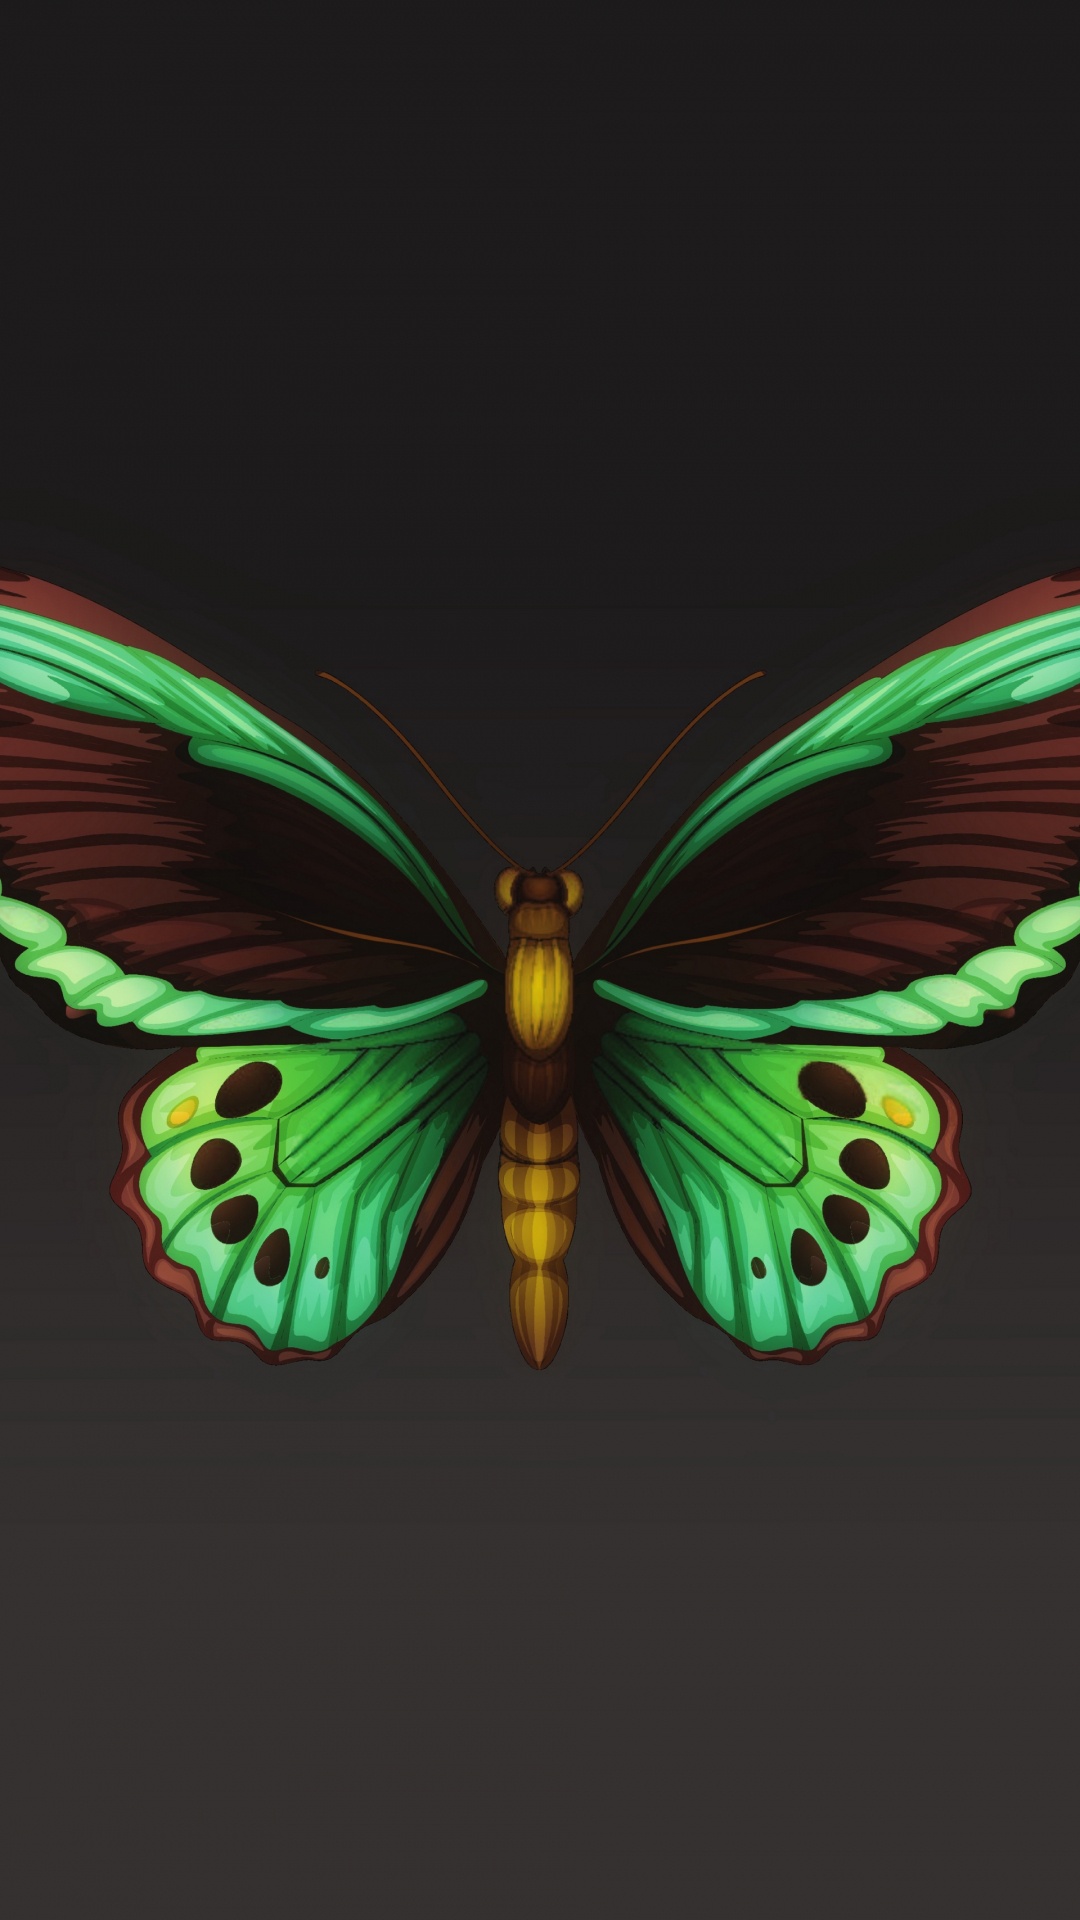 飞蛾和蝴蝶, 昆虫, 翼, 对称, 节肢动物 壁纸 1080x1920 允许